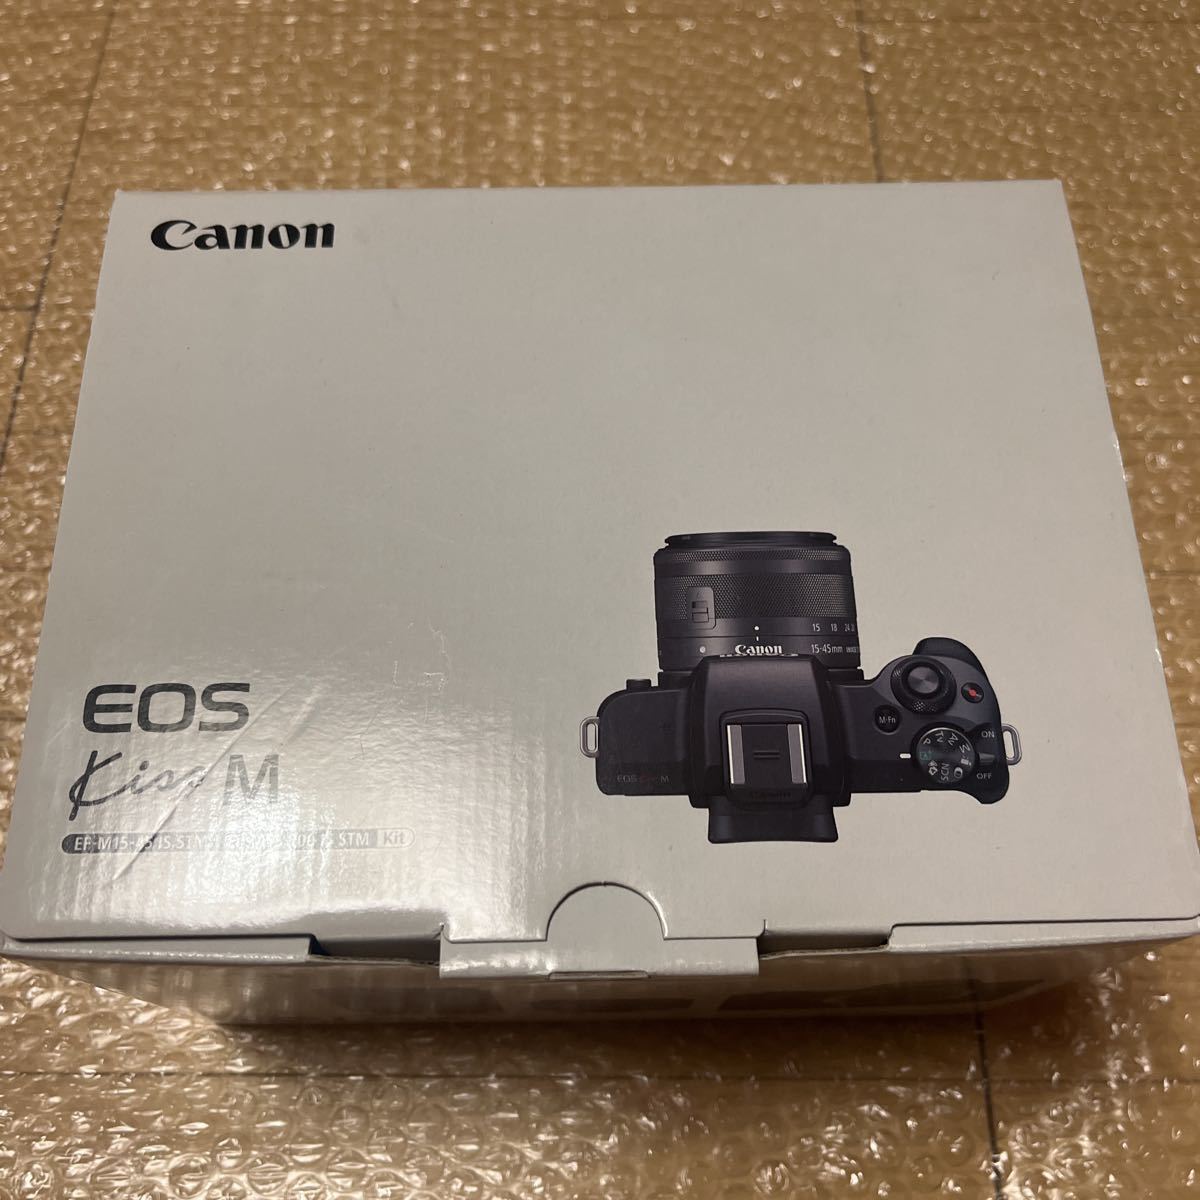 展示品 Canon キャノン ミラーレス一眼カメラ EOS Kiss M ダブルズーム